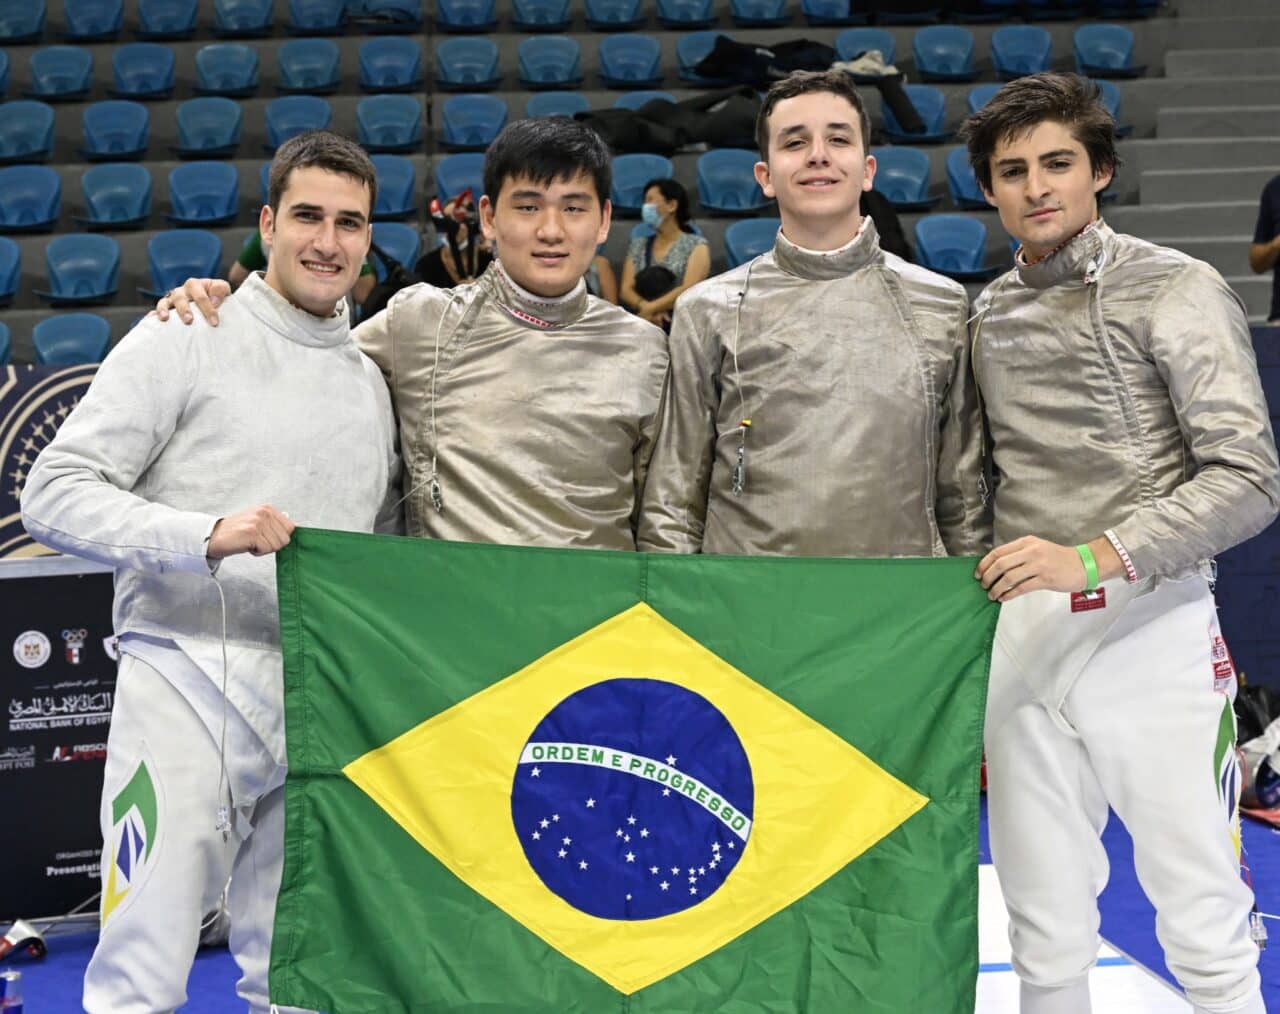 equipe sabre brasil mundial